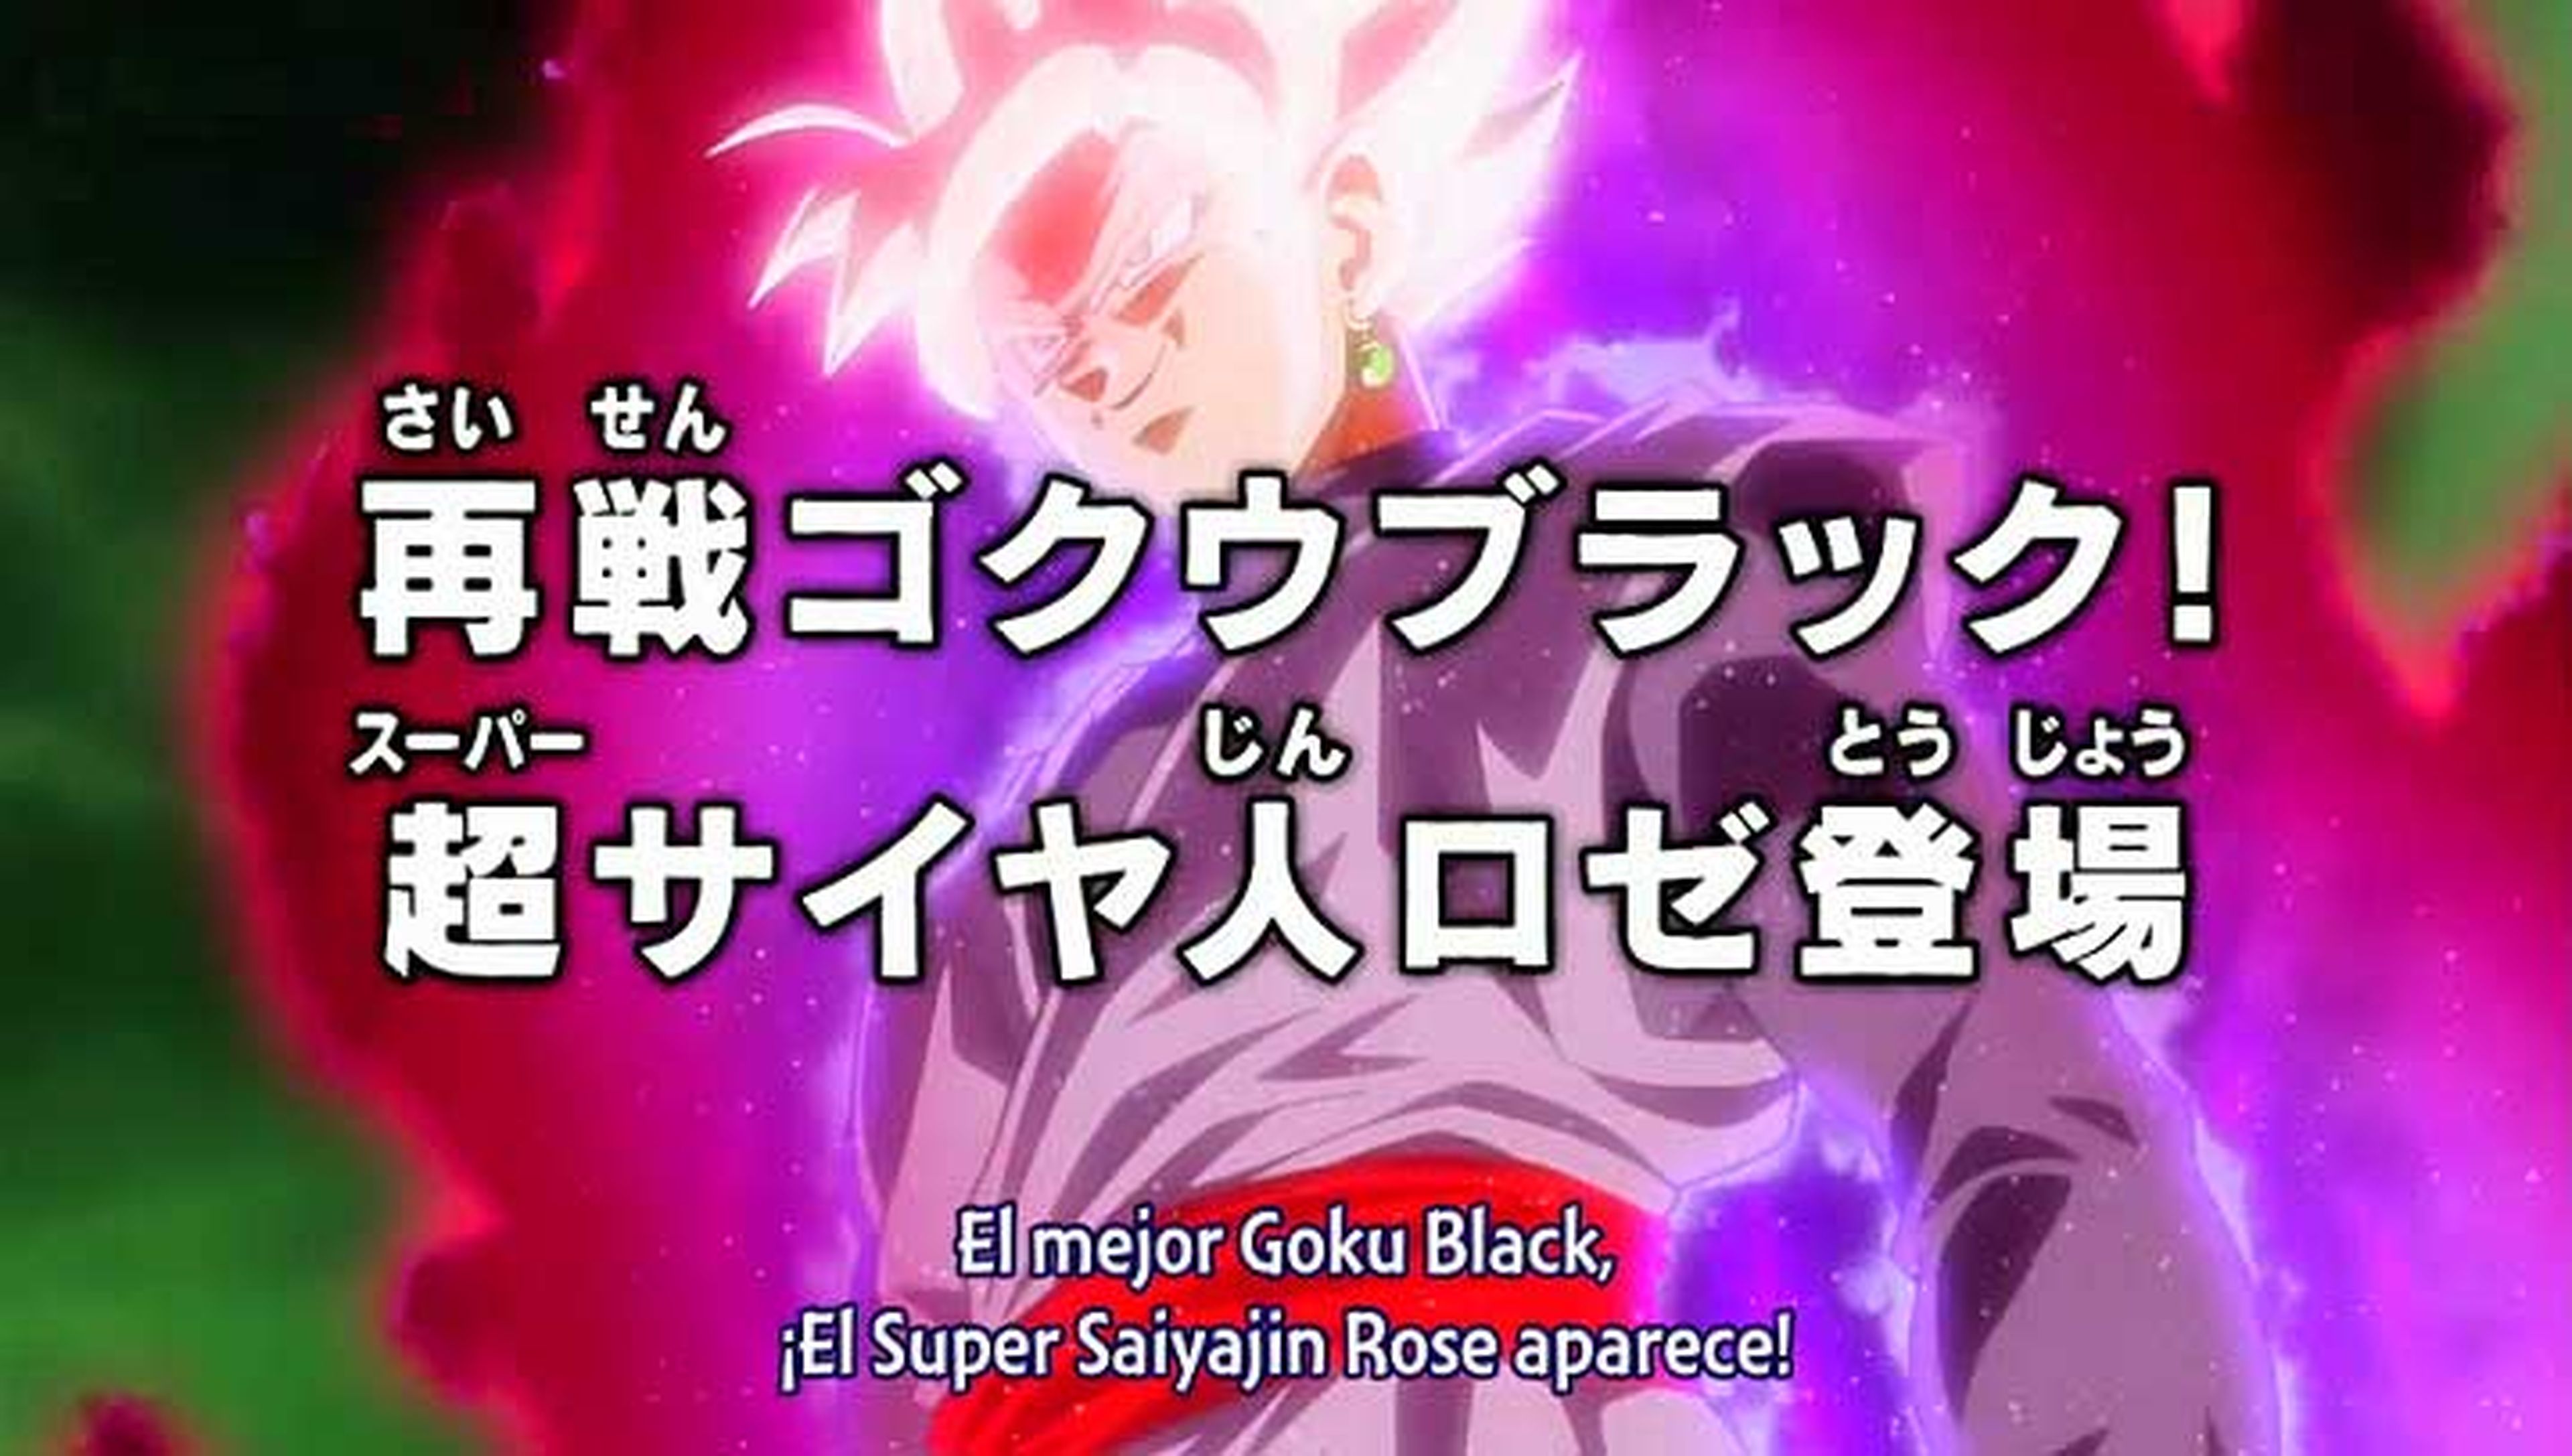 Super Saiyan Rose